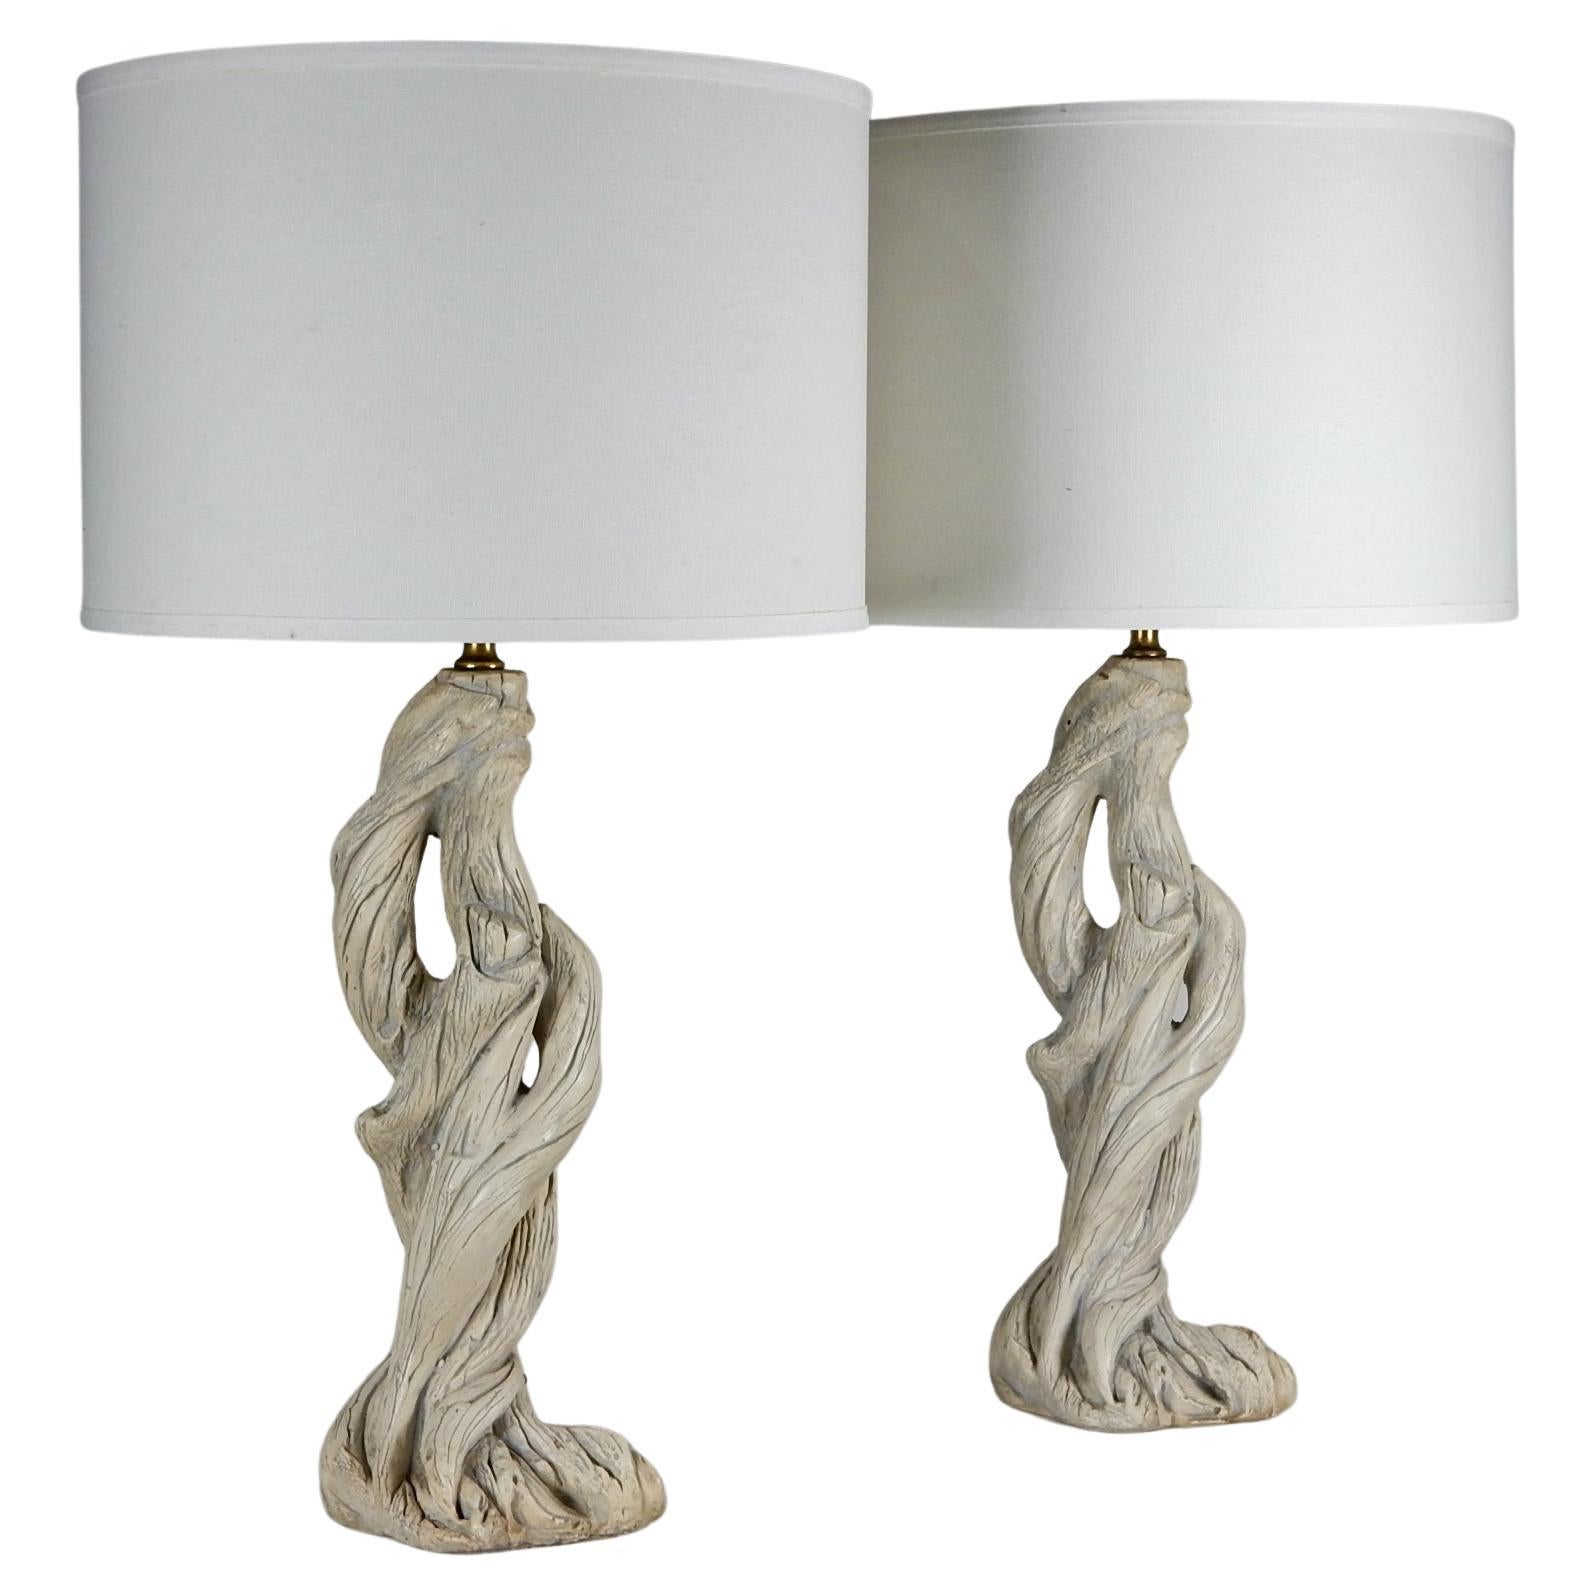 Fabuleuse paire de lampes de table en Faux Bois dans le style de Serge Roche.
Ils ressemblent vraiment au bois flotté naturel.
Vers les années 1960. Ils sont dans leur état d'origine
y compris le câblage. Pas de réparation ni de fissure.
Les